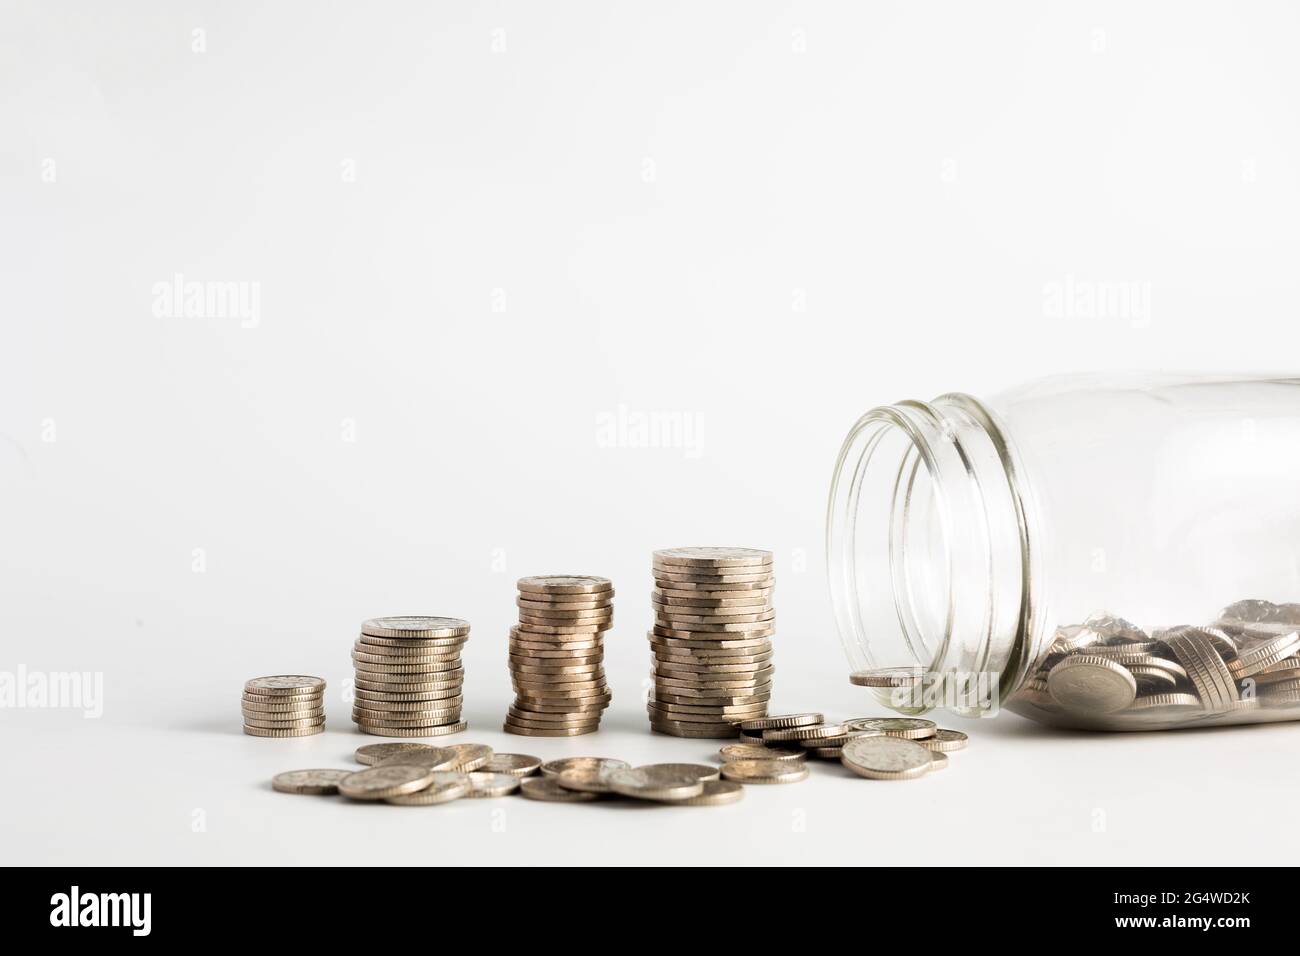 Monete accatastate vicino ad un vaso vuoto mezzo con le monete dentro e con un'etichetta su detto fondo di pensione. Pensione, finanziaria, risparmio, economia, investimenti conc Foto Stock